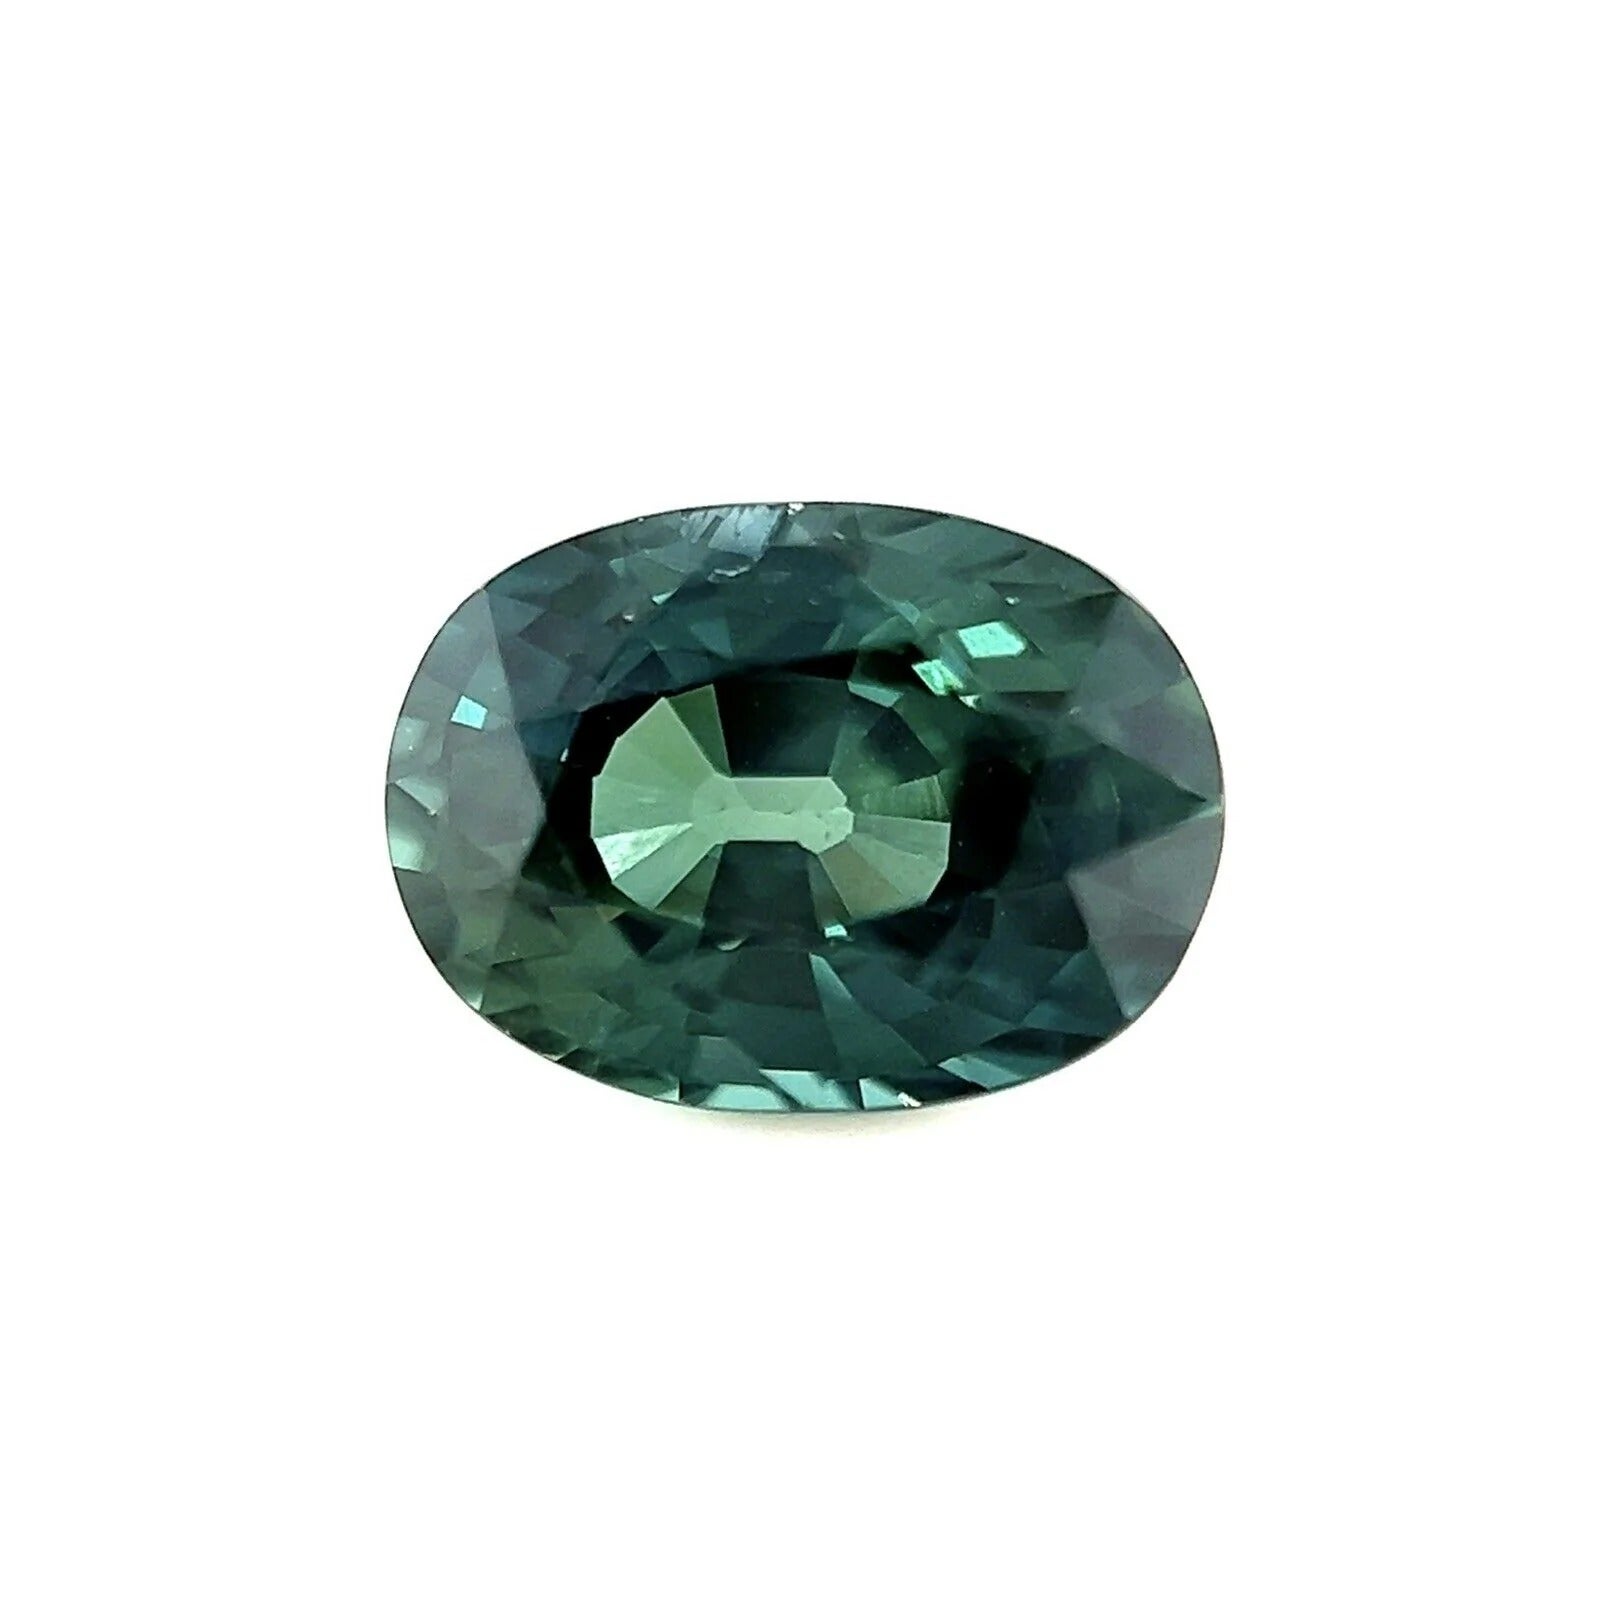 Saphir 1,00 carat, certifié GIA, non traité, bleu vif, taille ovale, non chauffé, rare